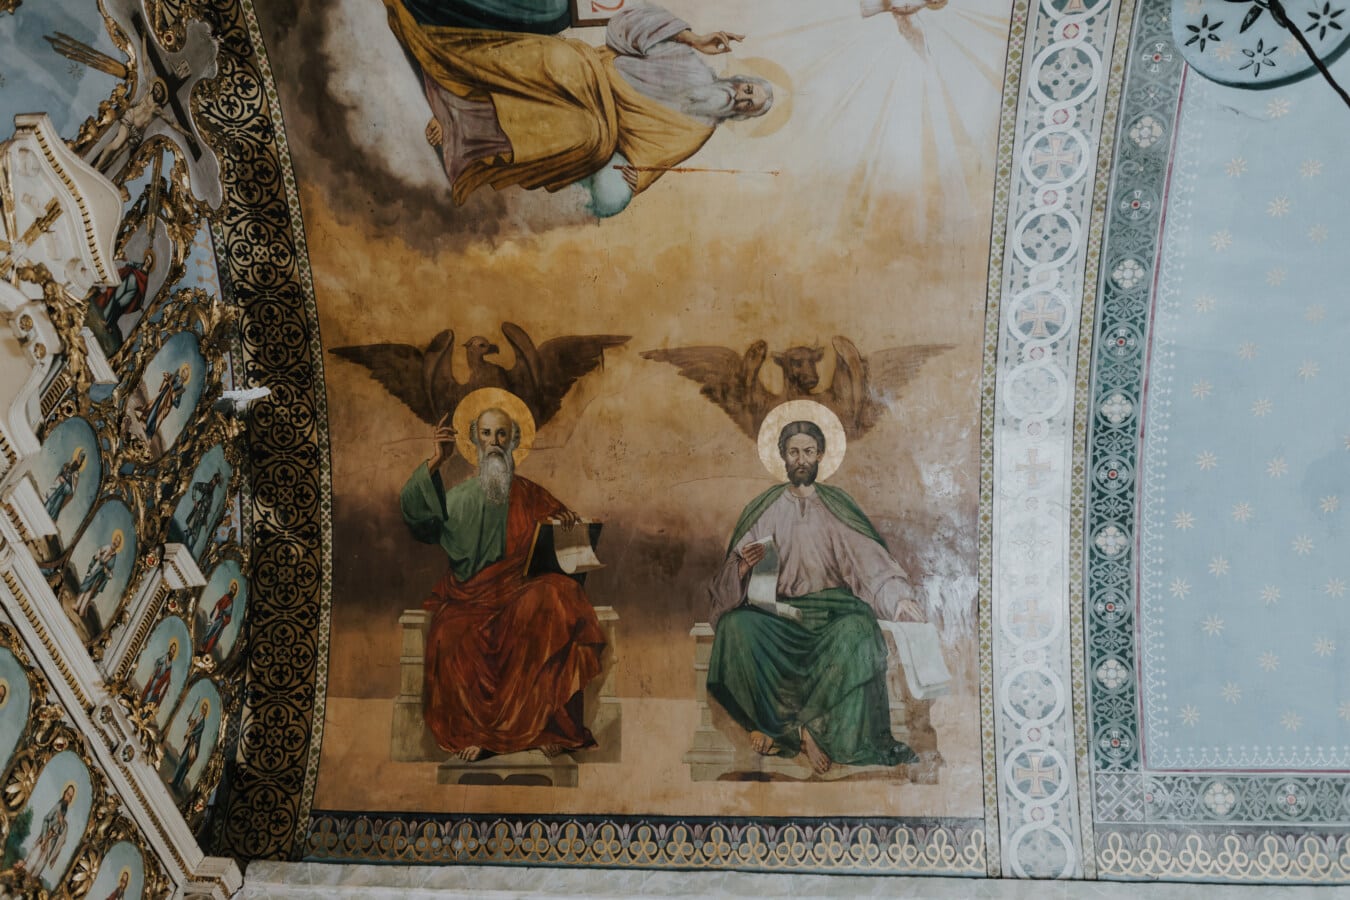 santo, mural, ikon, Ortodoks, Kekristenan, seni rupa, karya seni, dinding, abad pertengahan, budaya